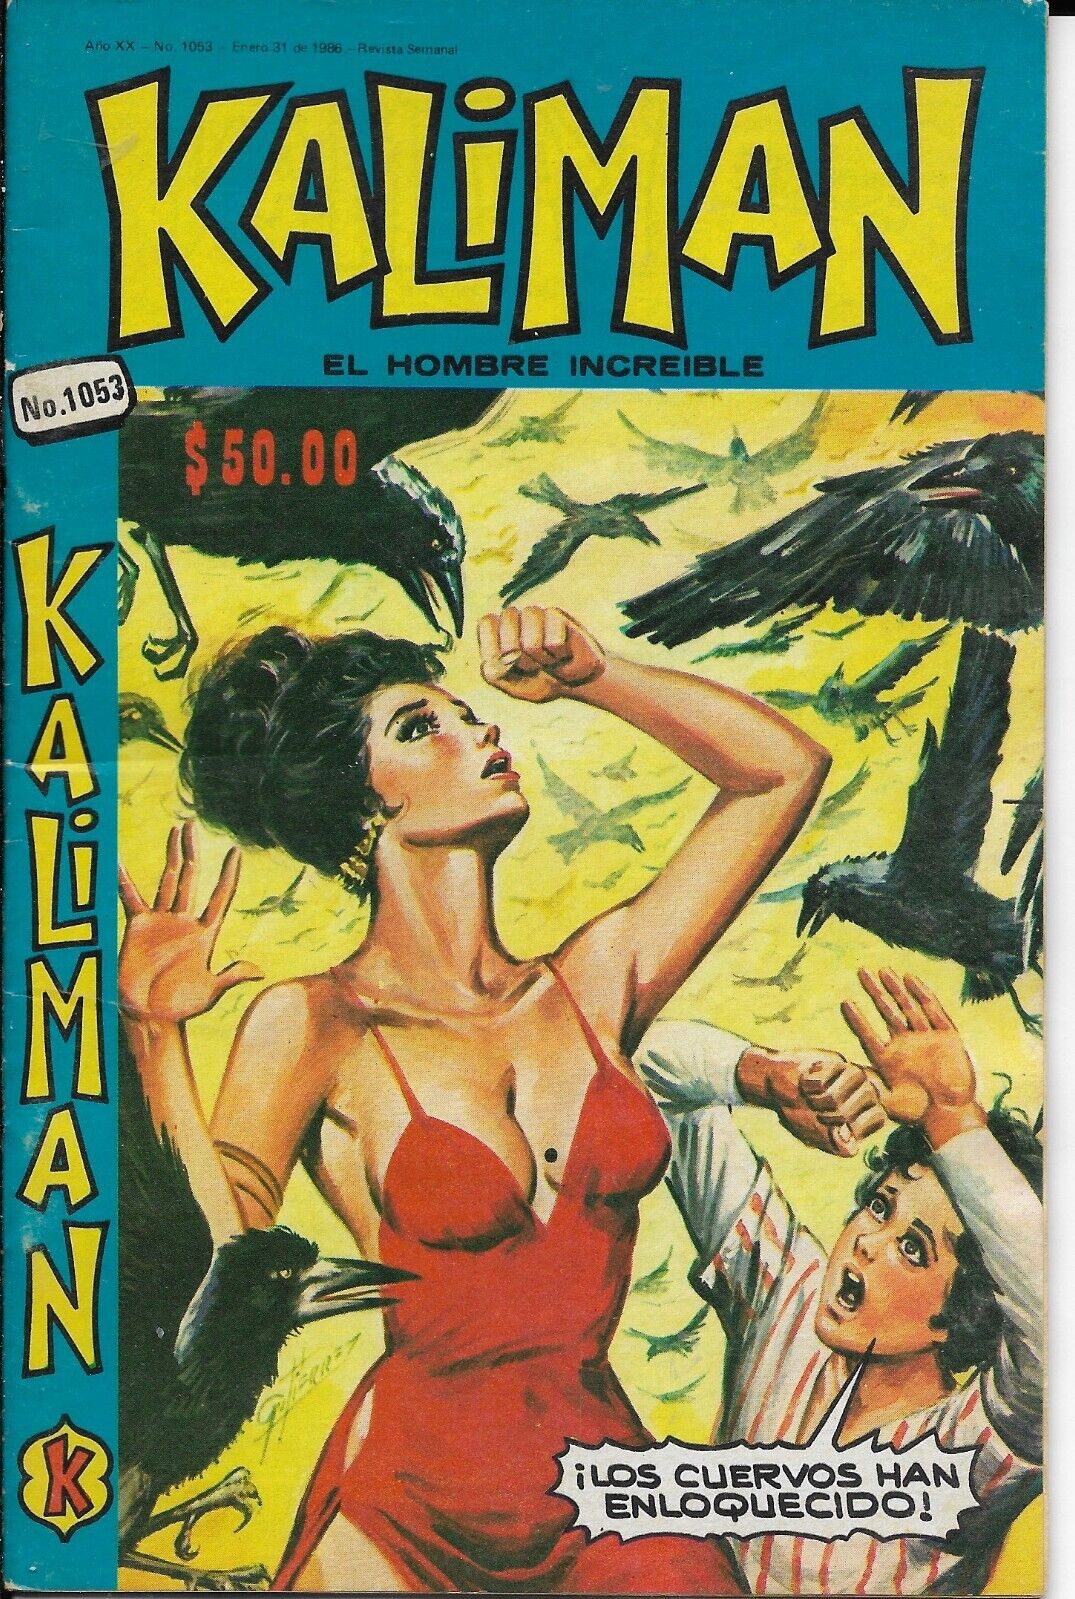 Kaliman El Hombre Increible #1053 - Enero 31, 1986